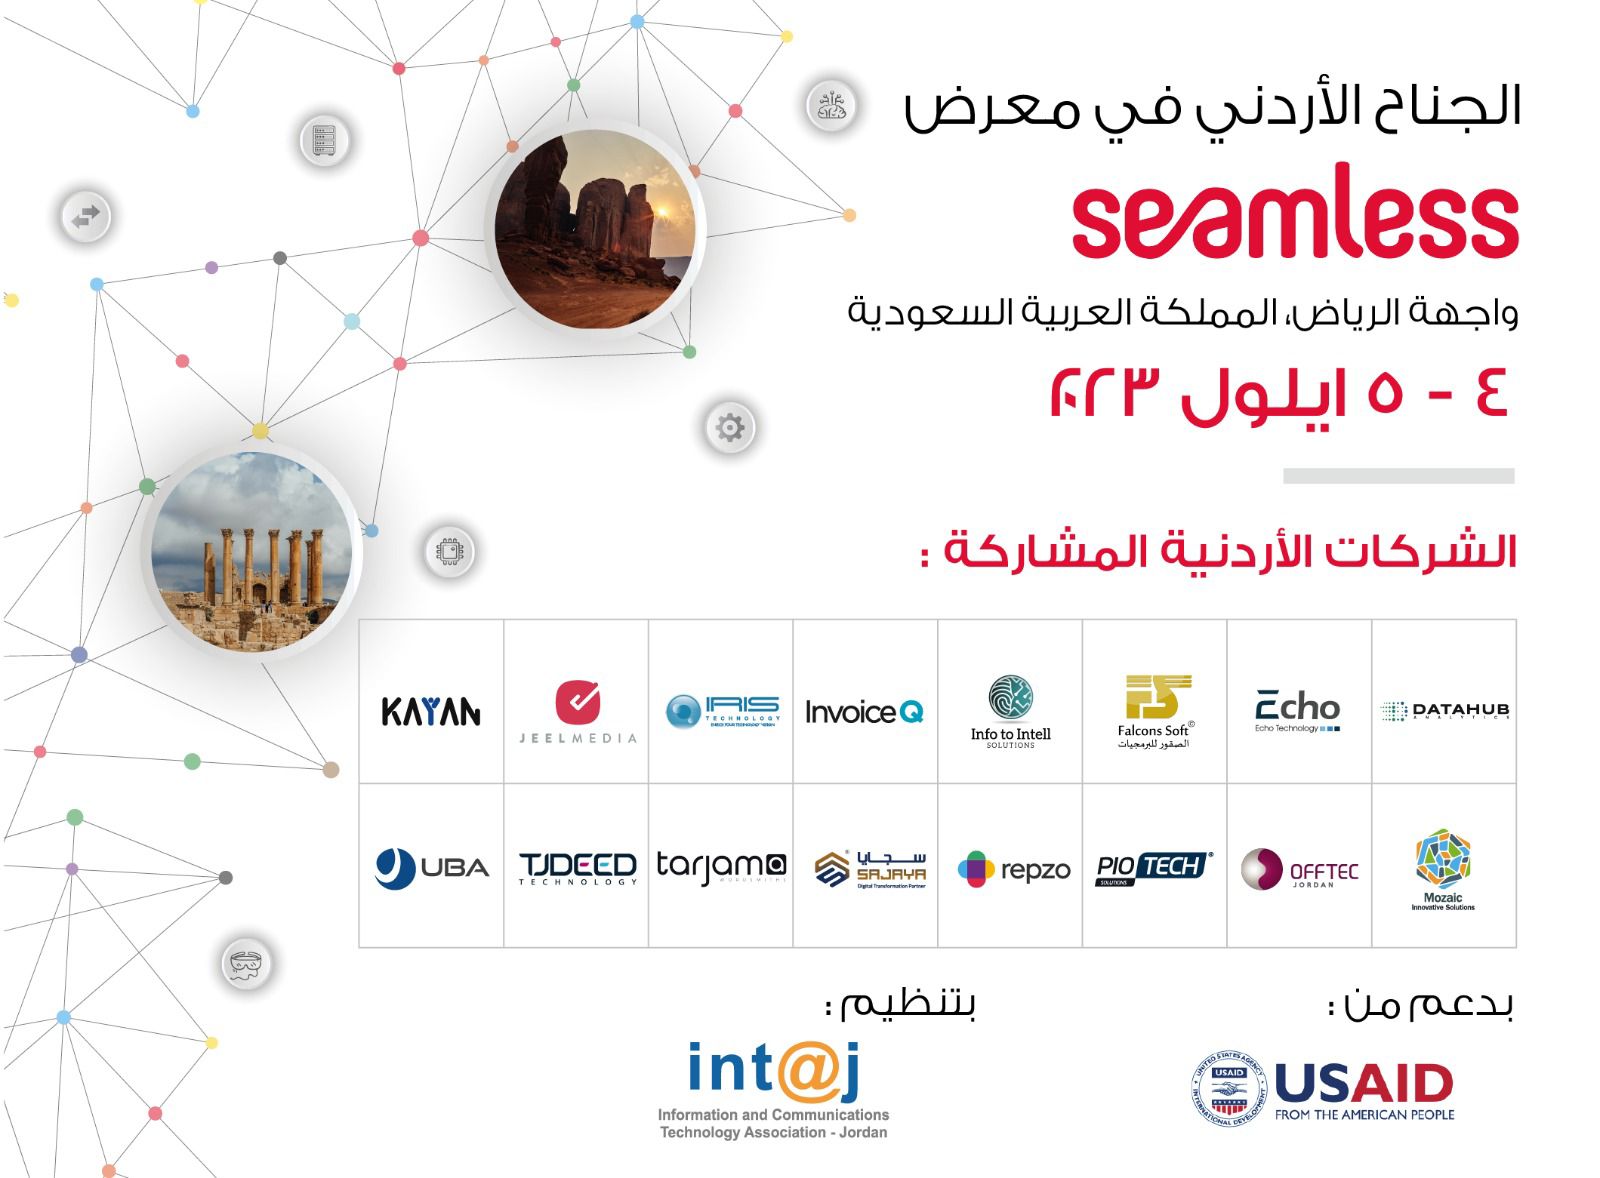 16 شركة 《تكنولوجيا المعلومات》 تشارك في الجناح الأردني الذي تقيمه جمعية 《إنتاج》 في معرض سيملس بالسعودية 